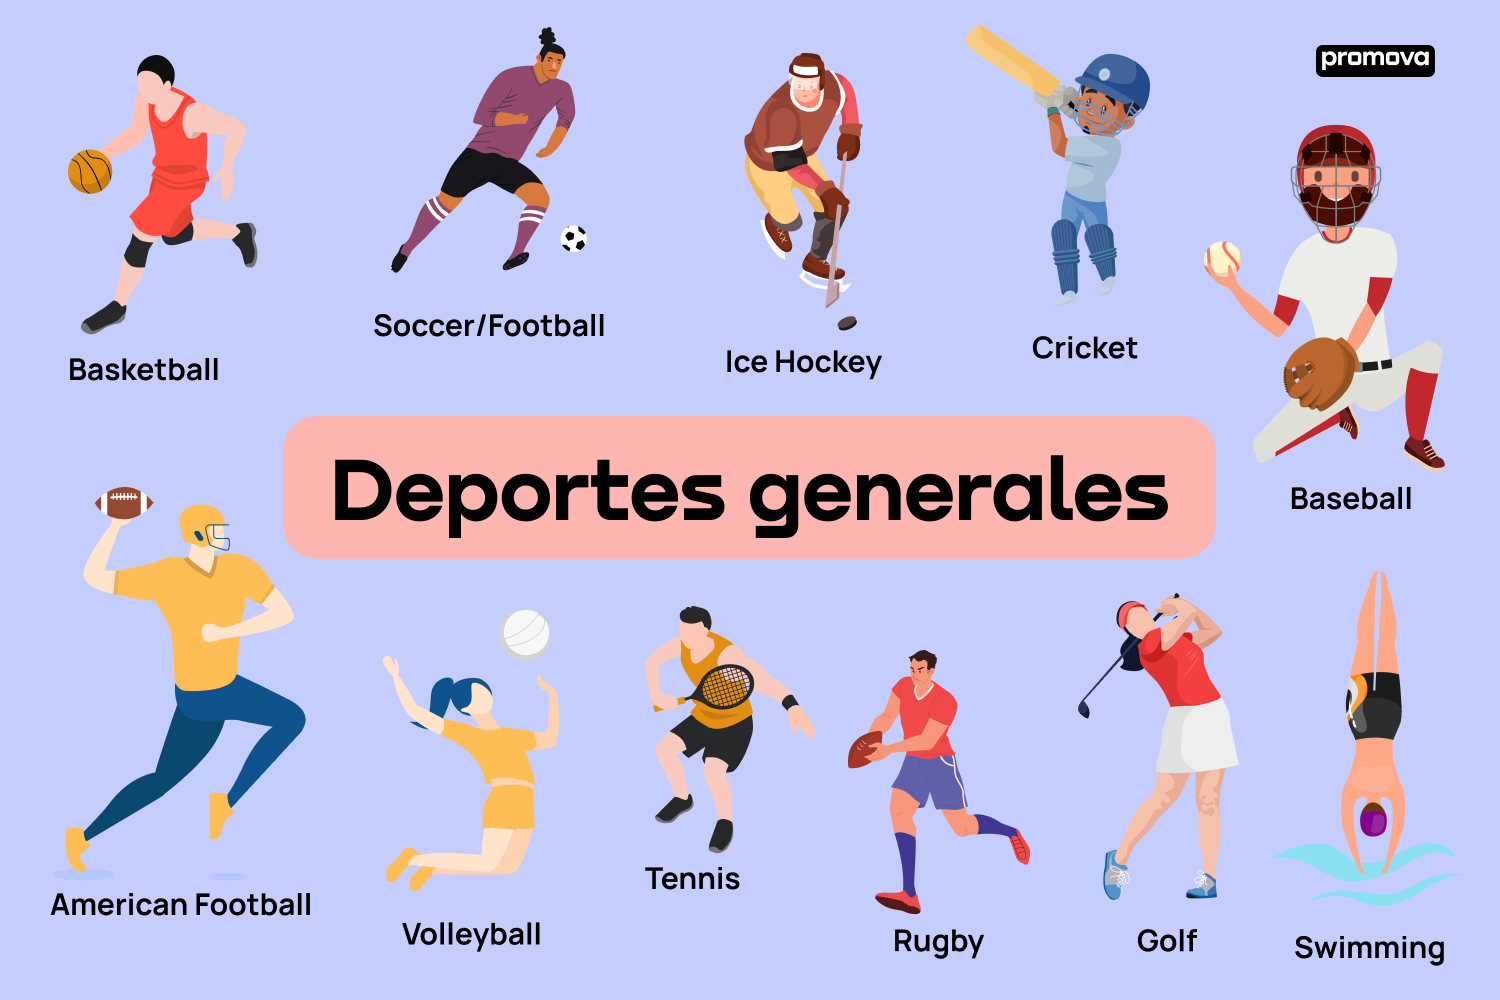 Desvelando el juego: Modismos y vocabulario del deporte en Inglés